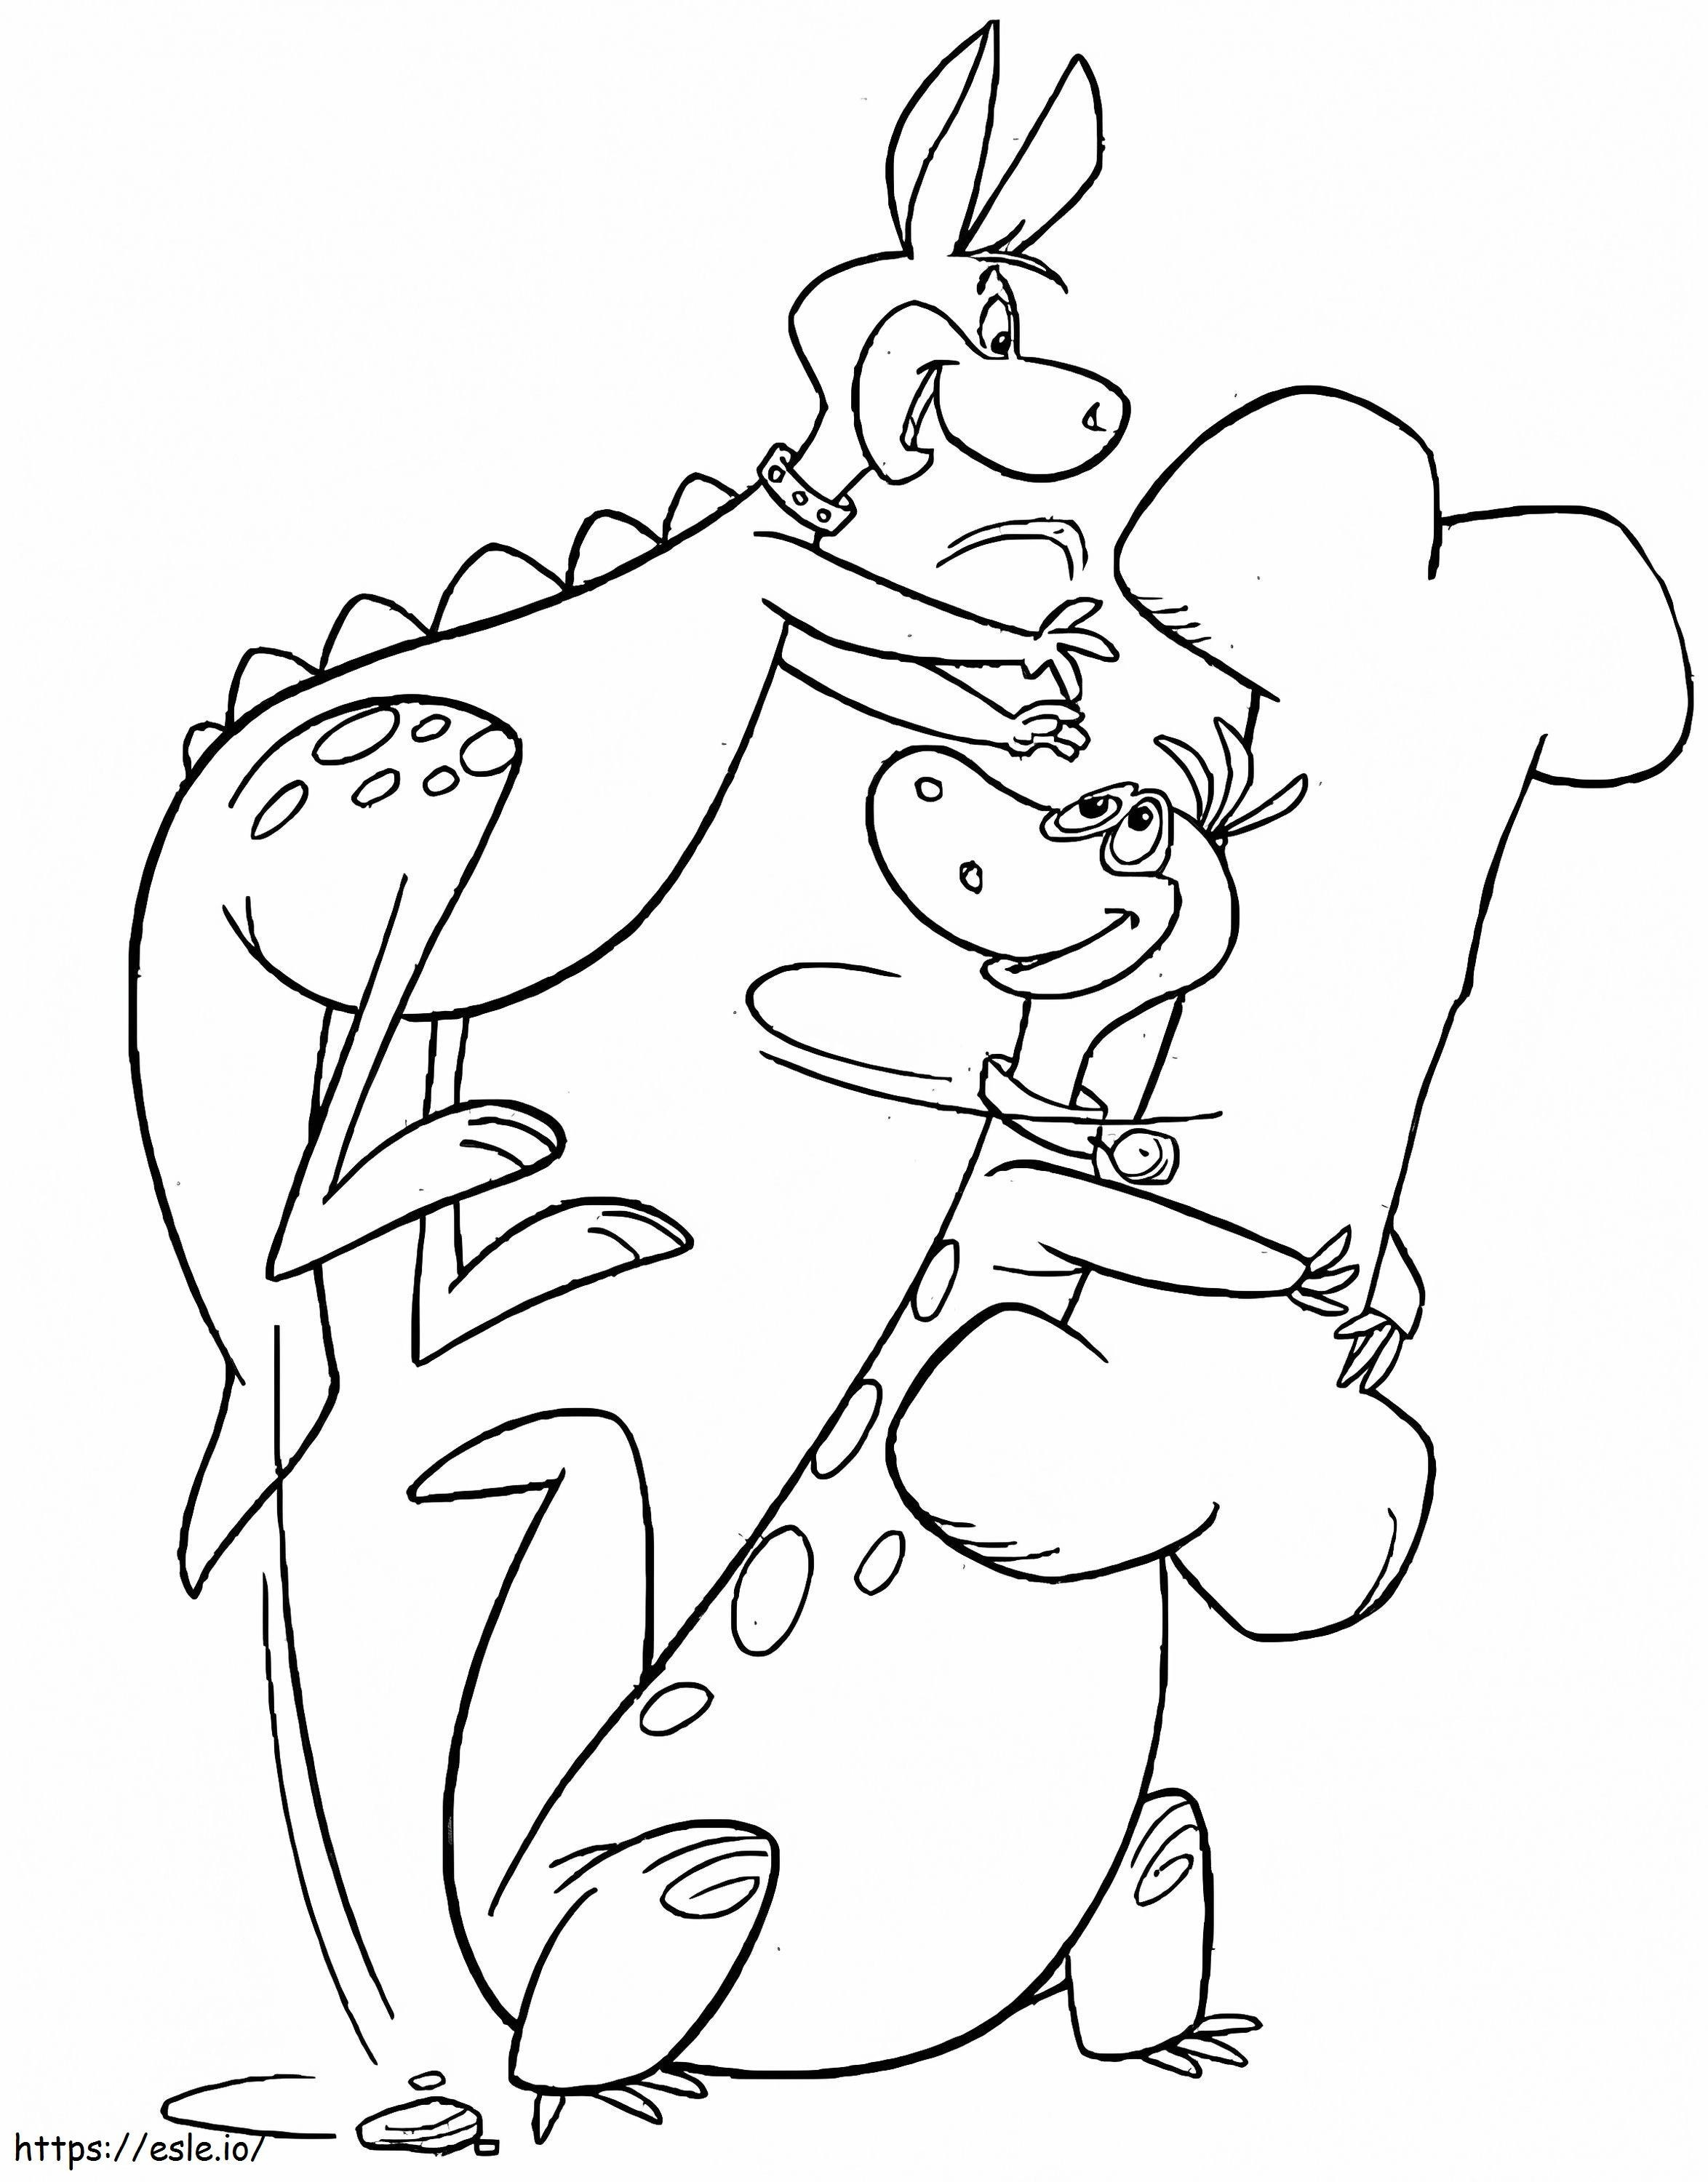 Hoppy és Dino a Flintstonesból kifestő